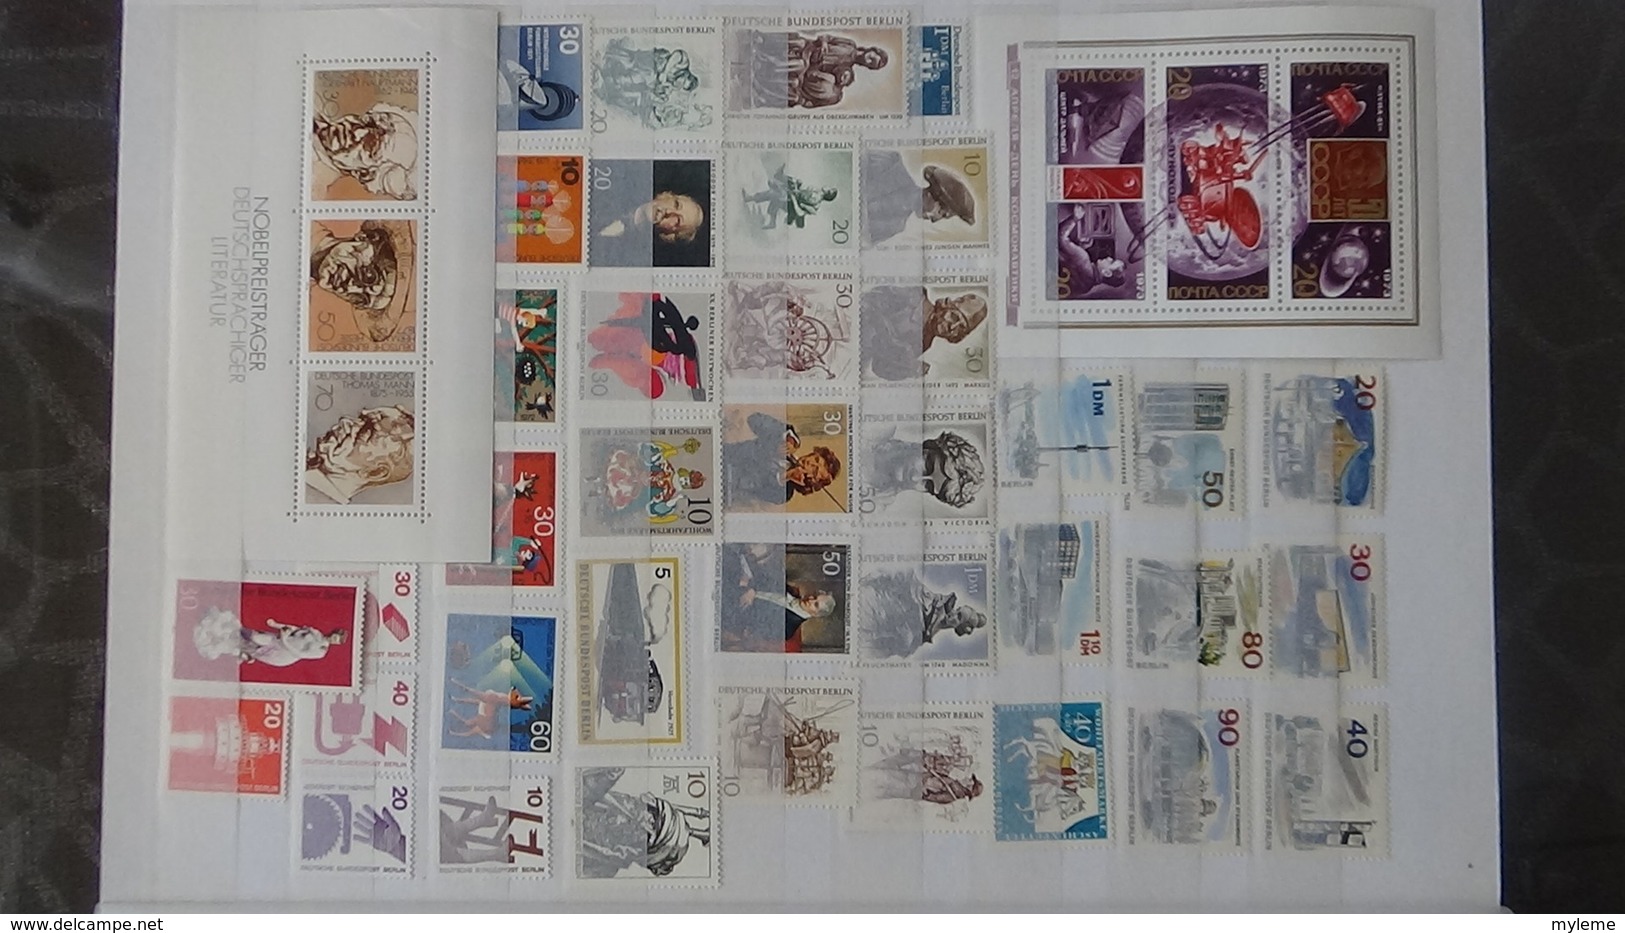 Gros album (64 photos) de timbres et 151 blocs ** de divers pays dont quelques NON DENTELES. Côte très sympa